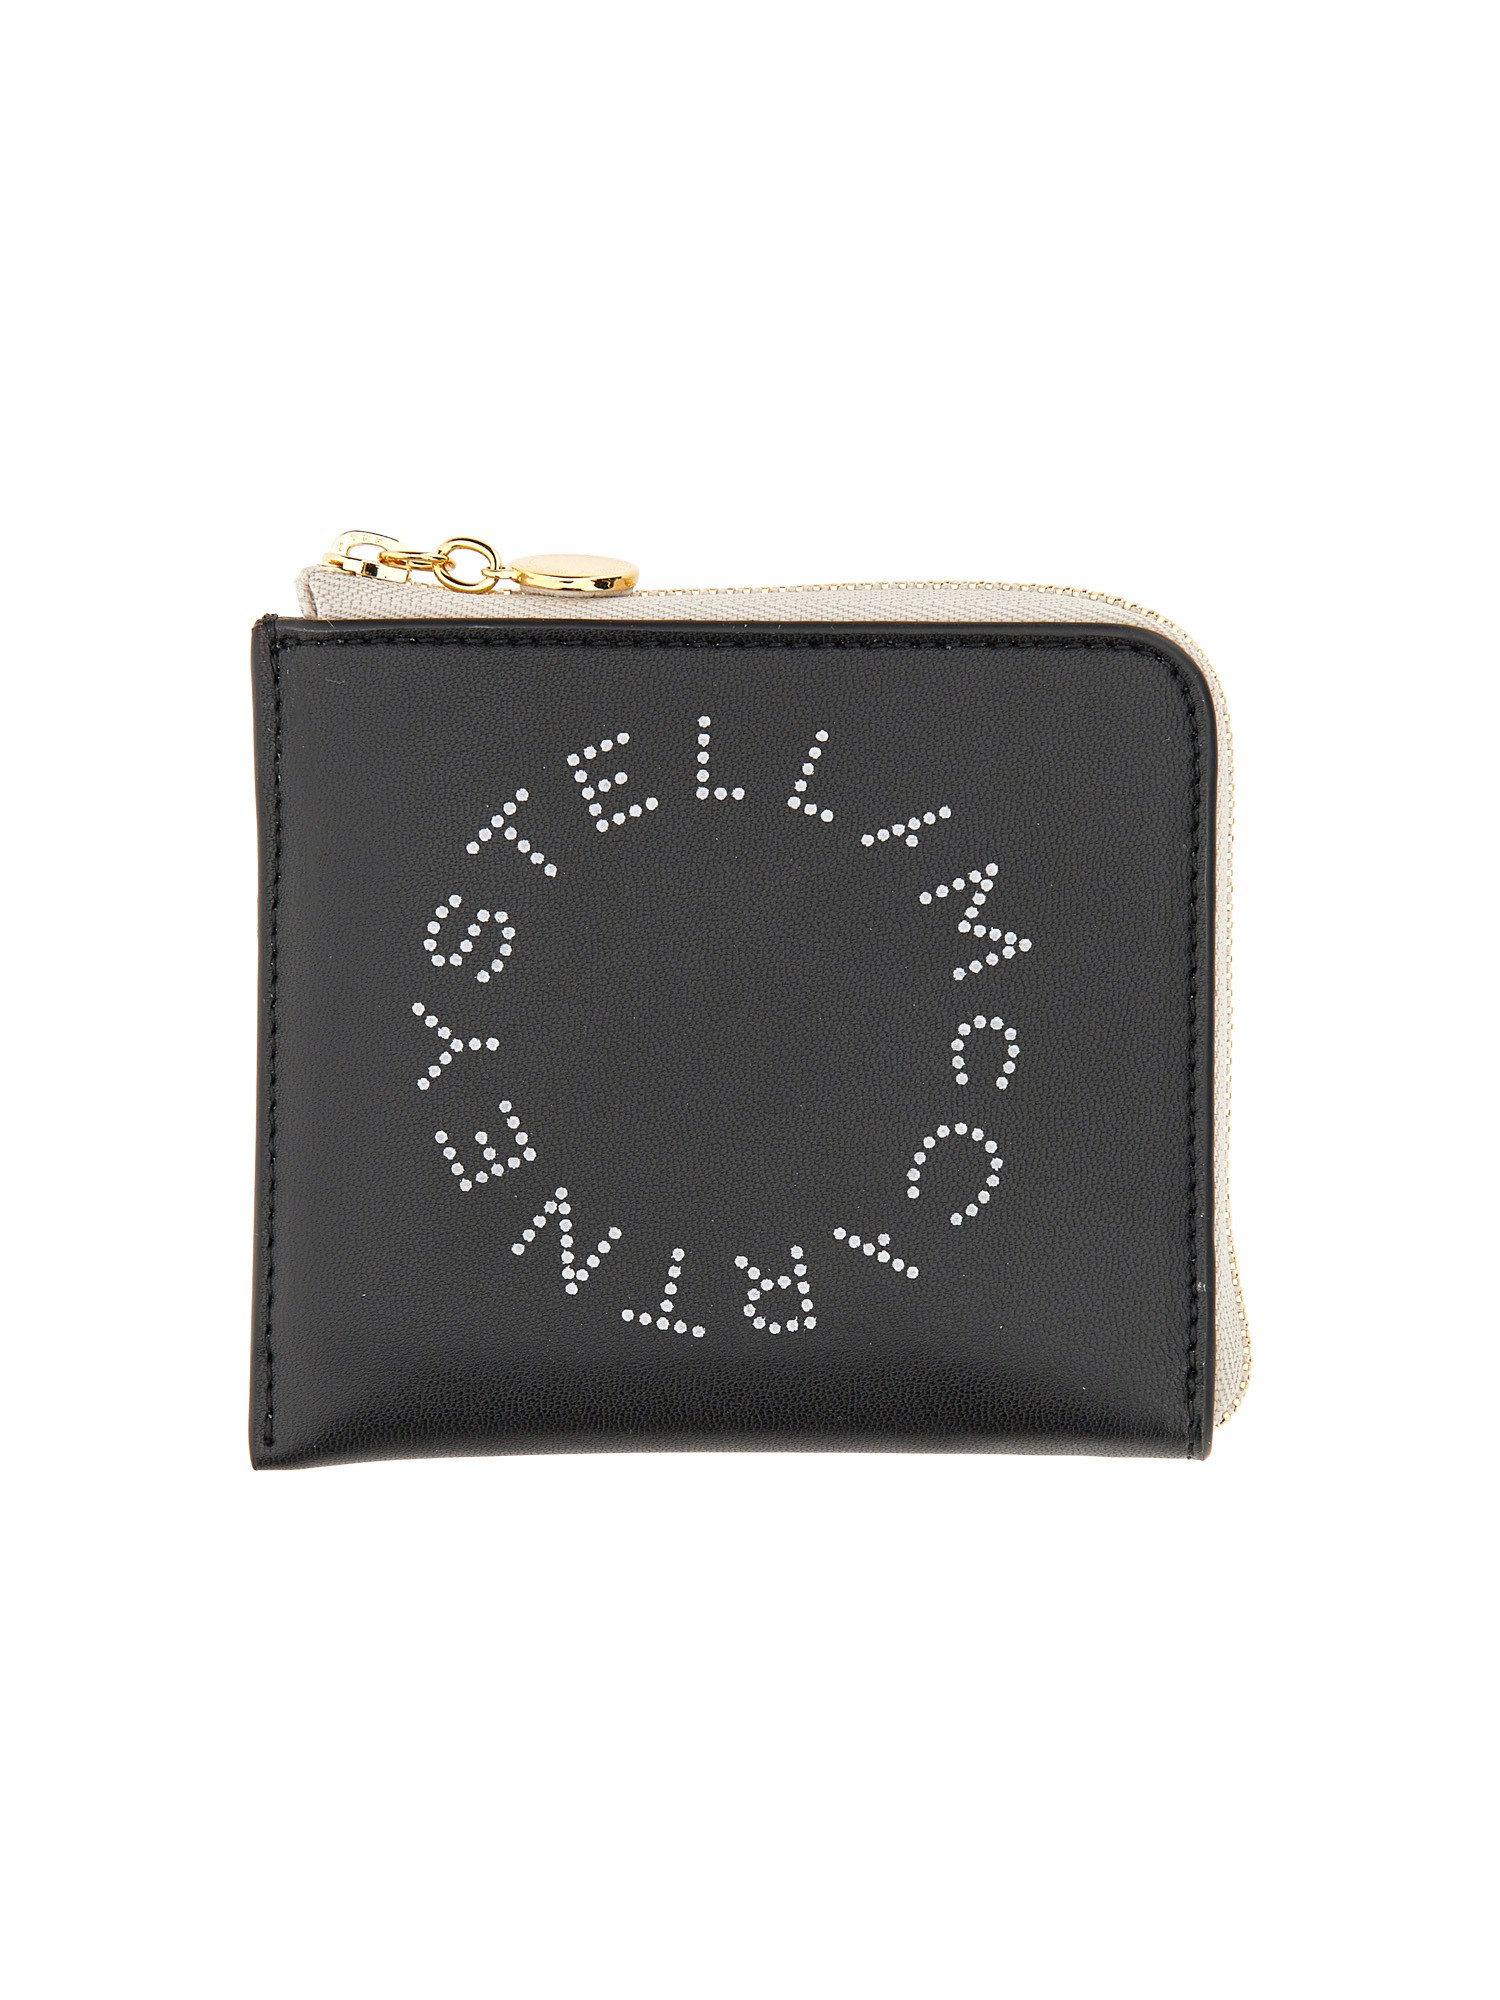 stella mccartney zipped wallet